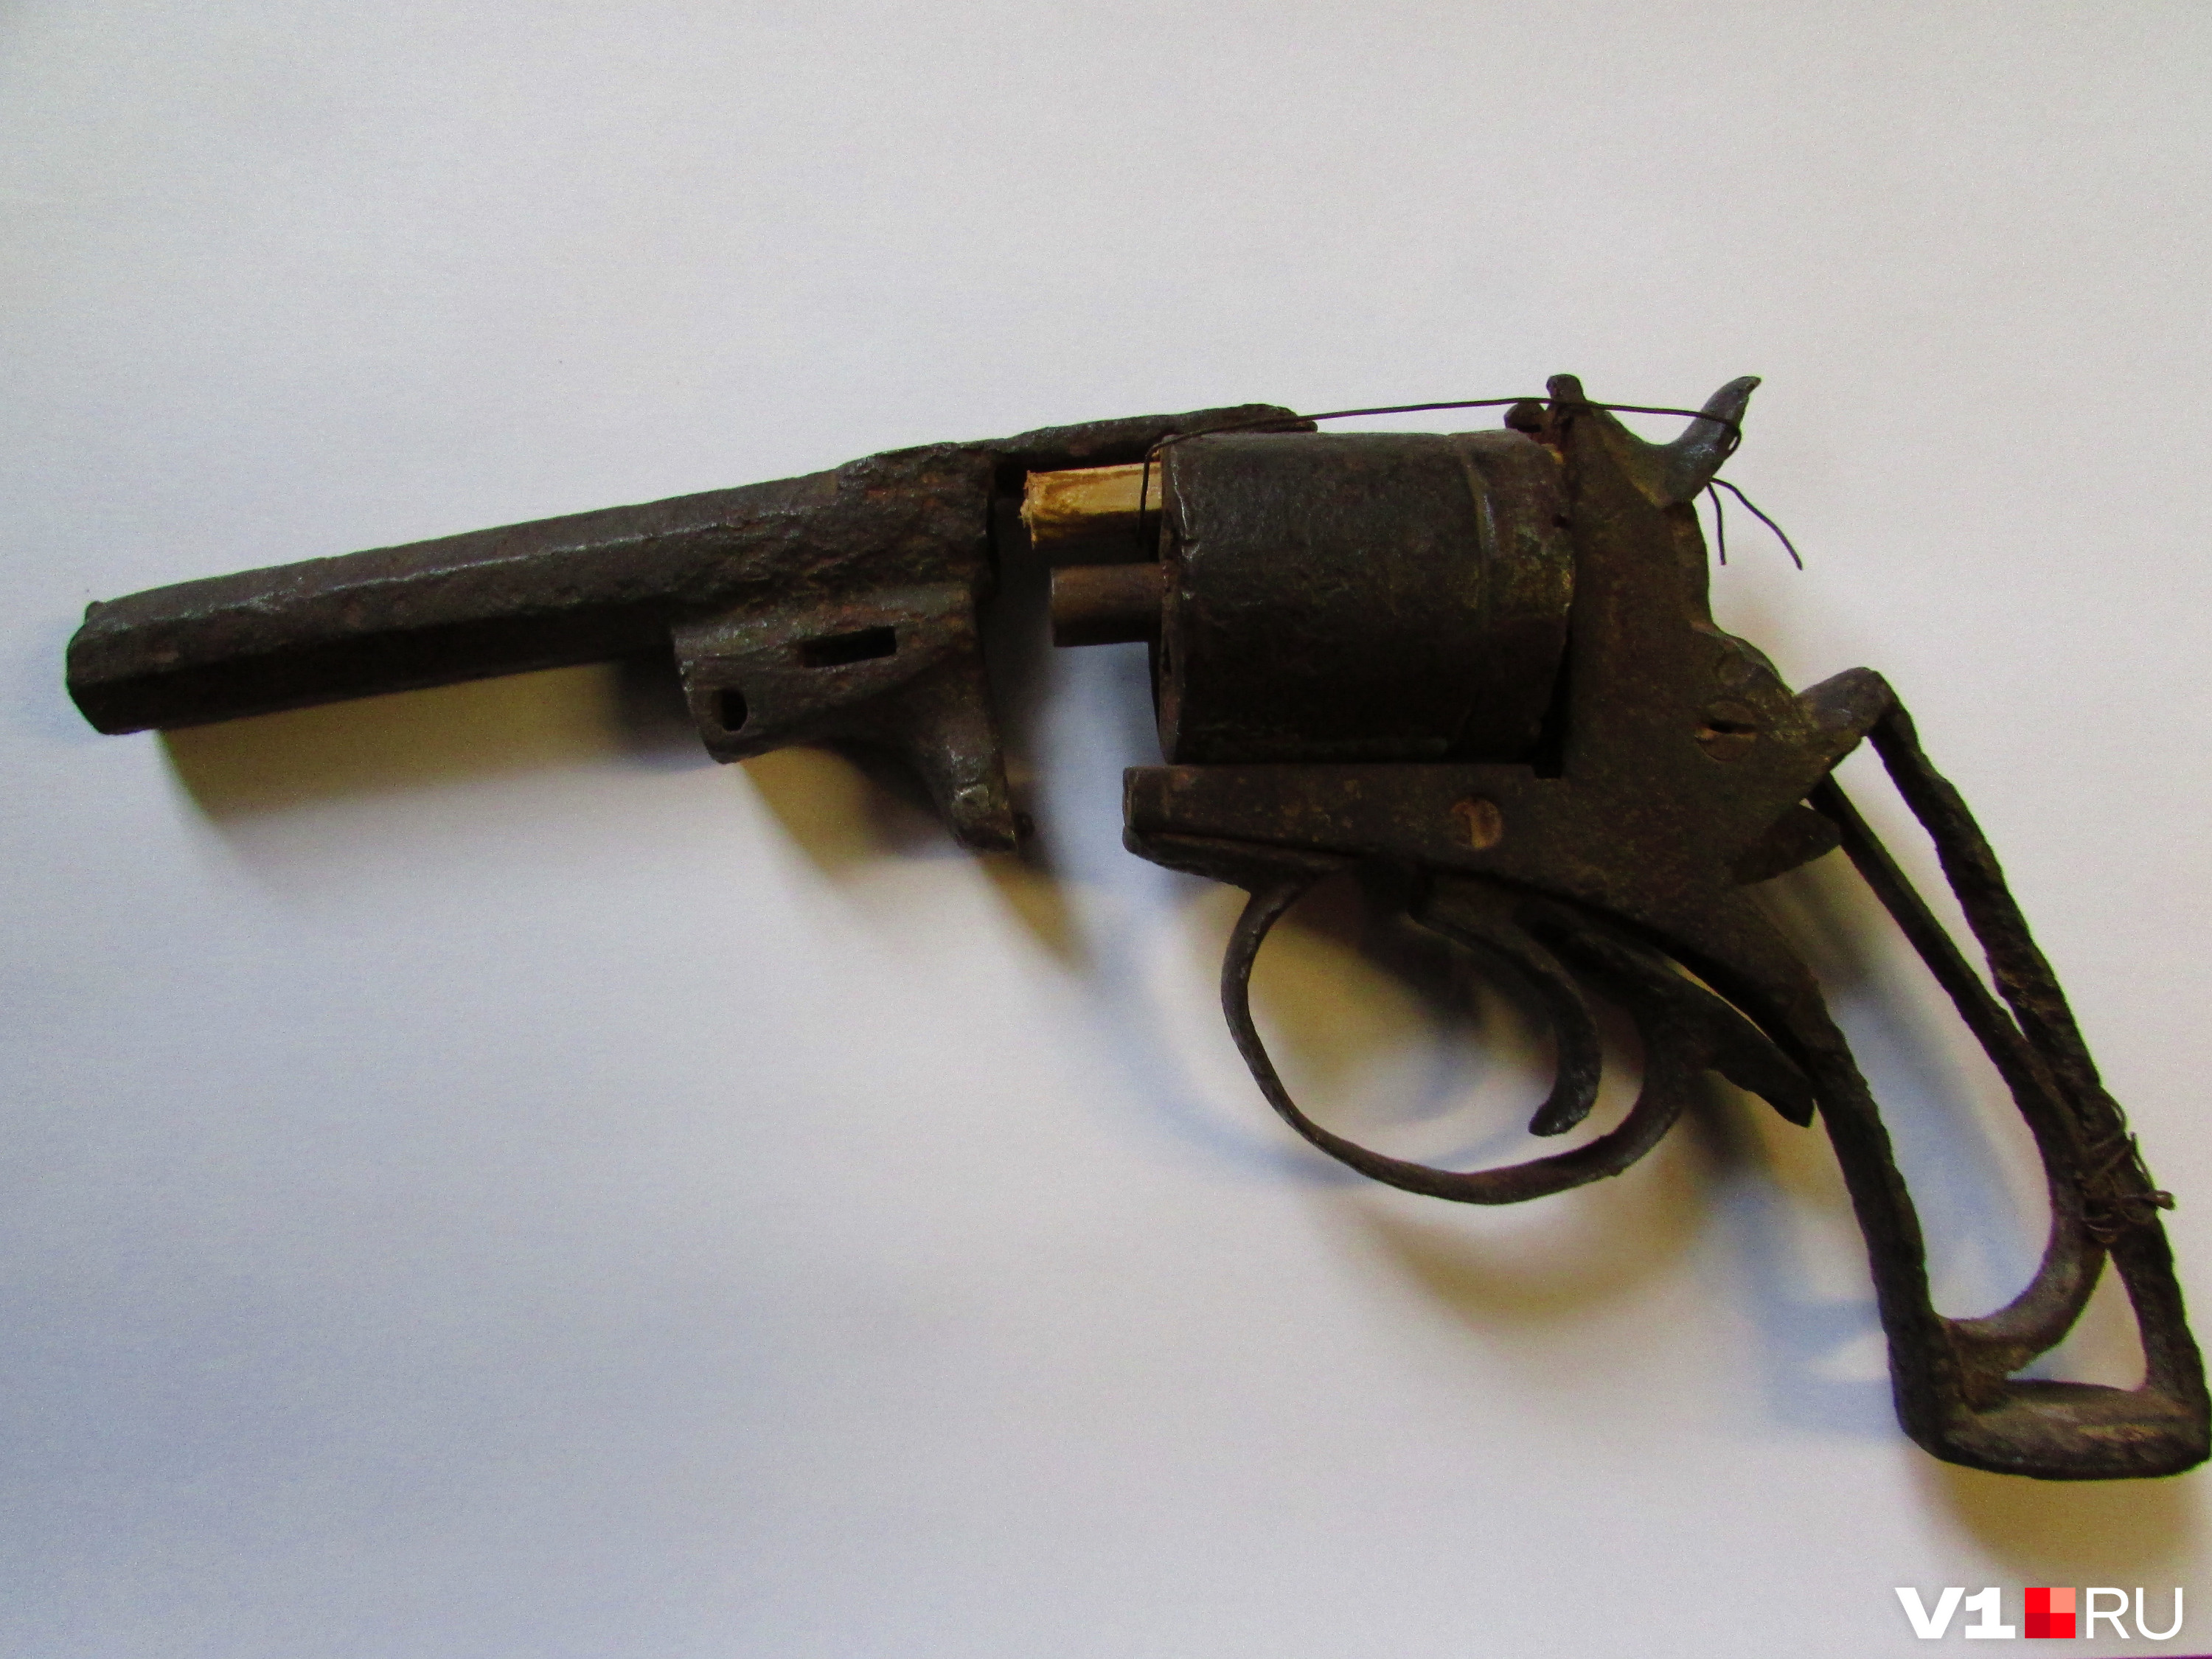 Оружие Гражданской войны, теперь экспонат в районных музеях